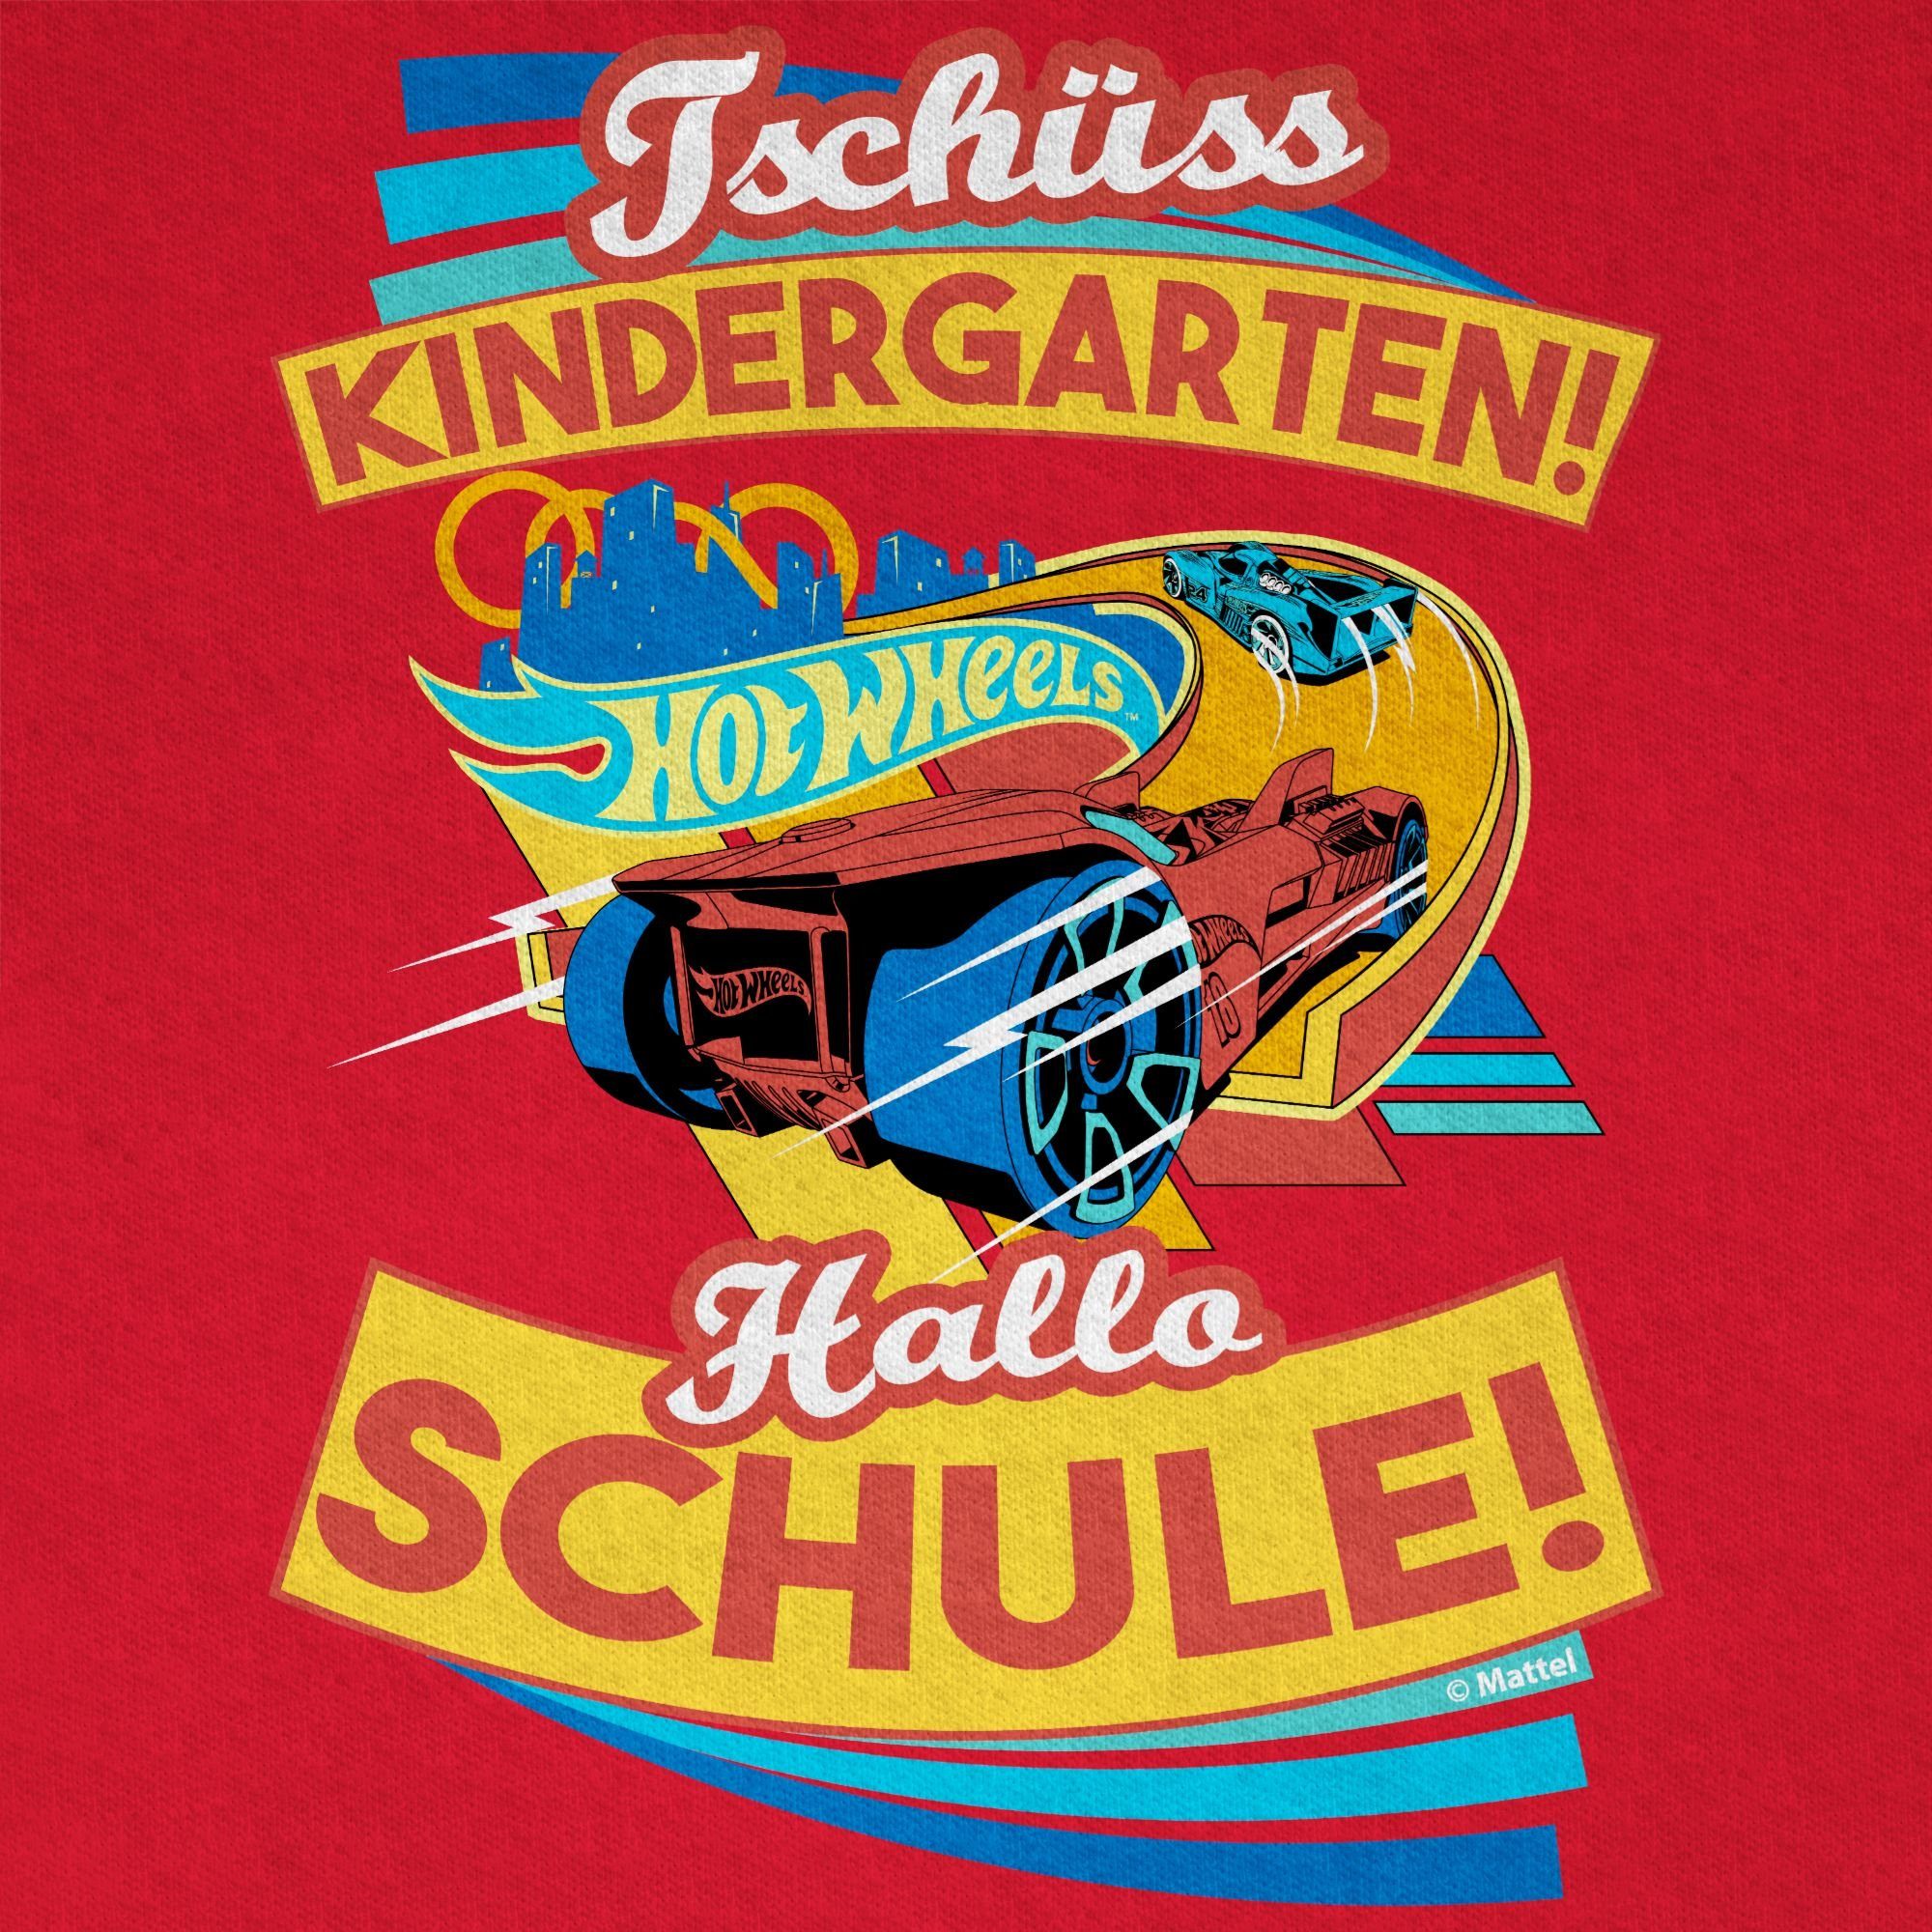 Rot Jungen T-Shirt Hot Wheels 03 Schule! Shirtracer Tschüss Hallo Kindergarten!